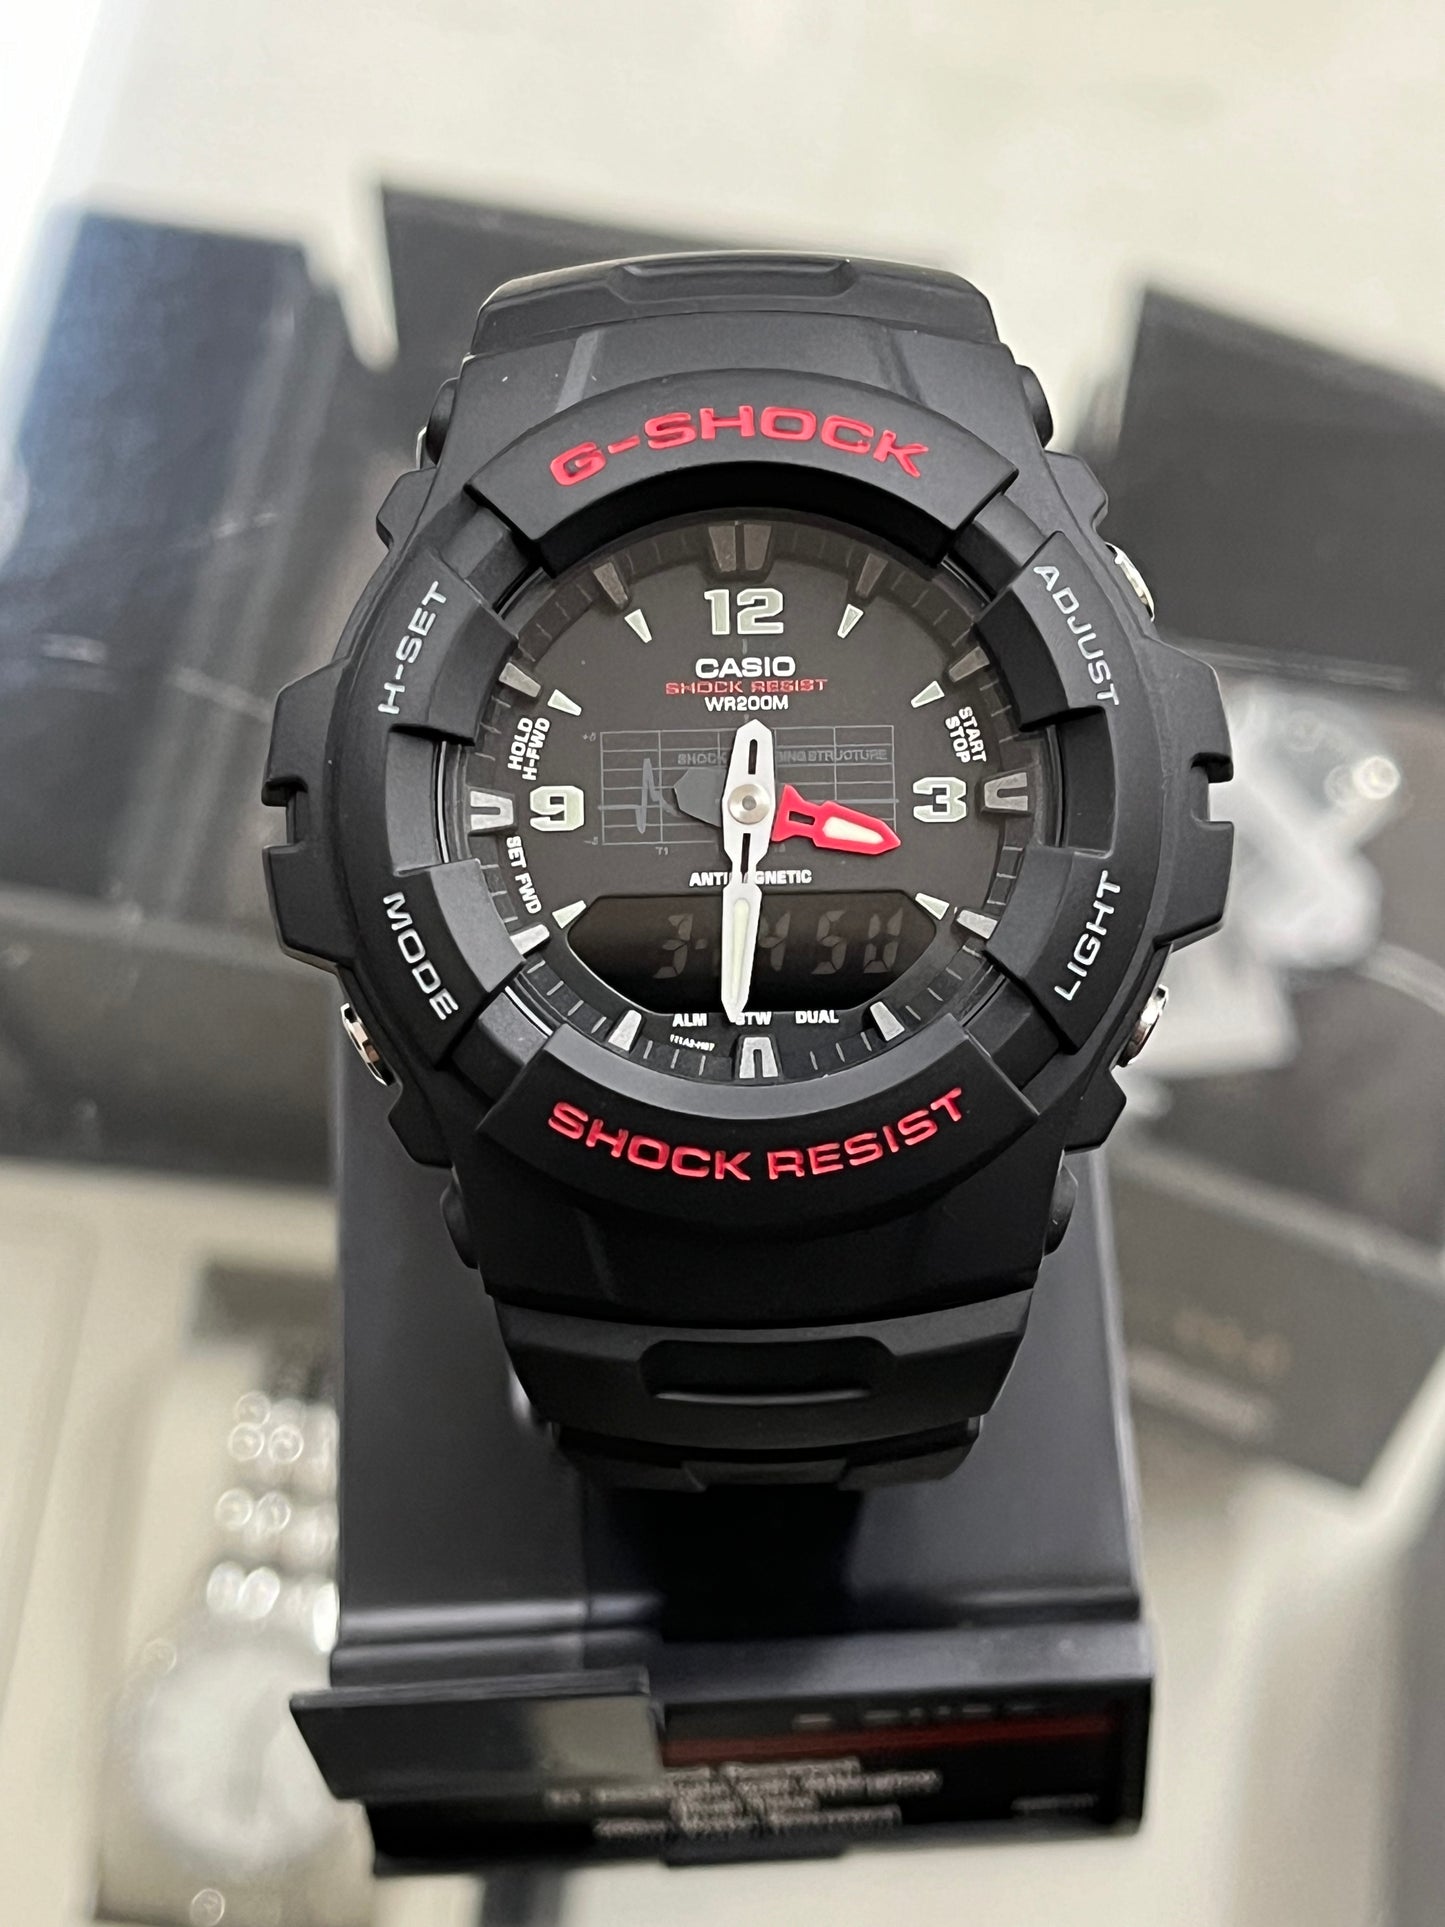 A28) Casio Men's G-Shock G100 Sport Watch